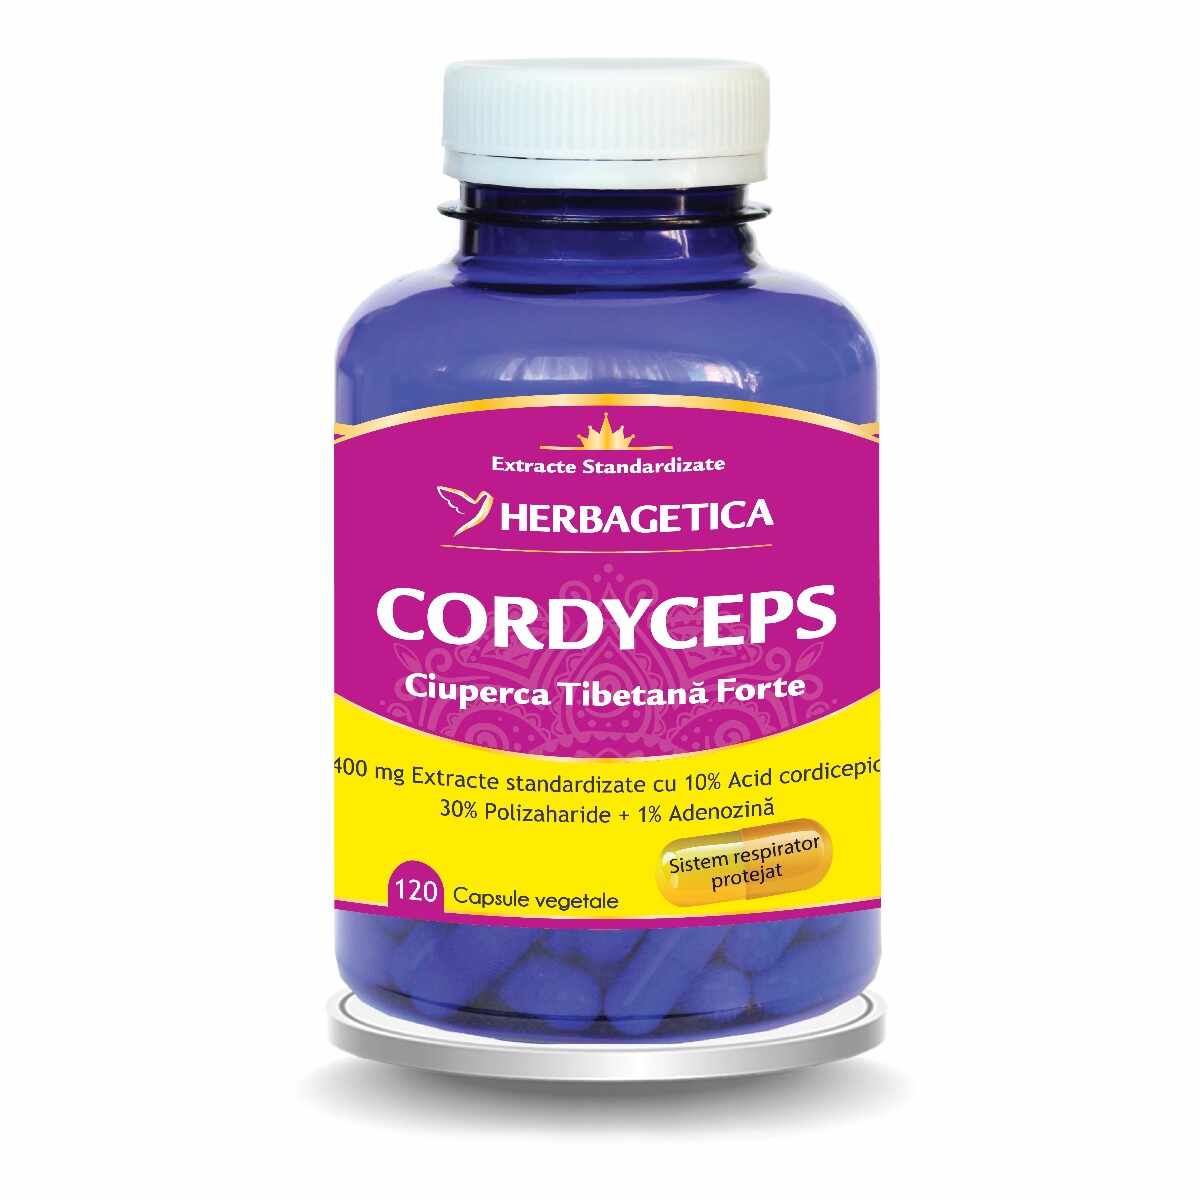  Cordyceps 10/30/1, 120 capsule, Herbagetica